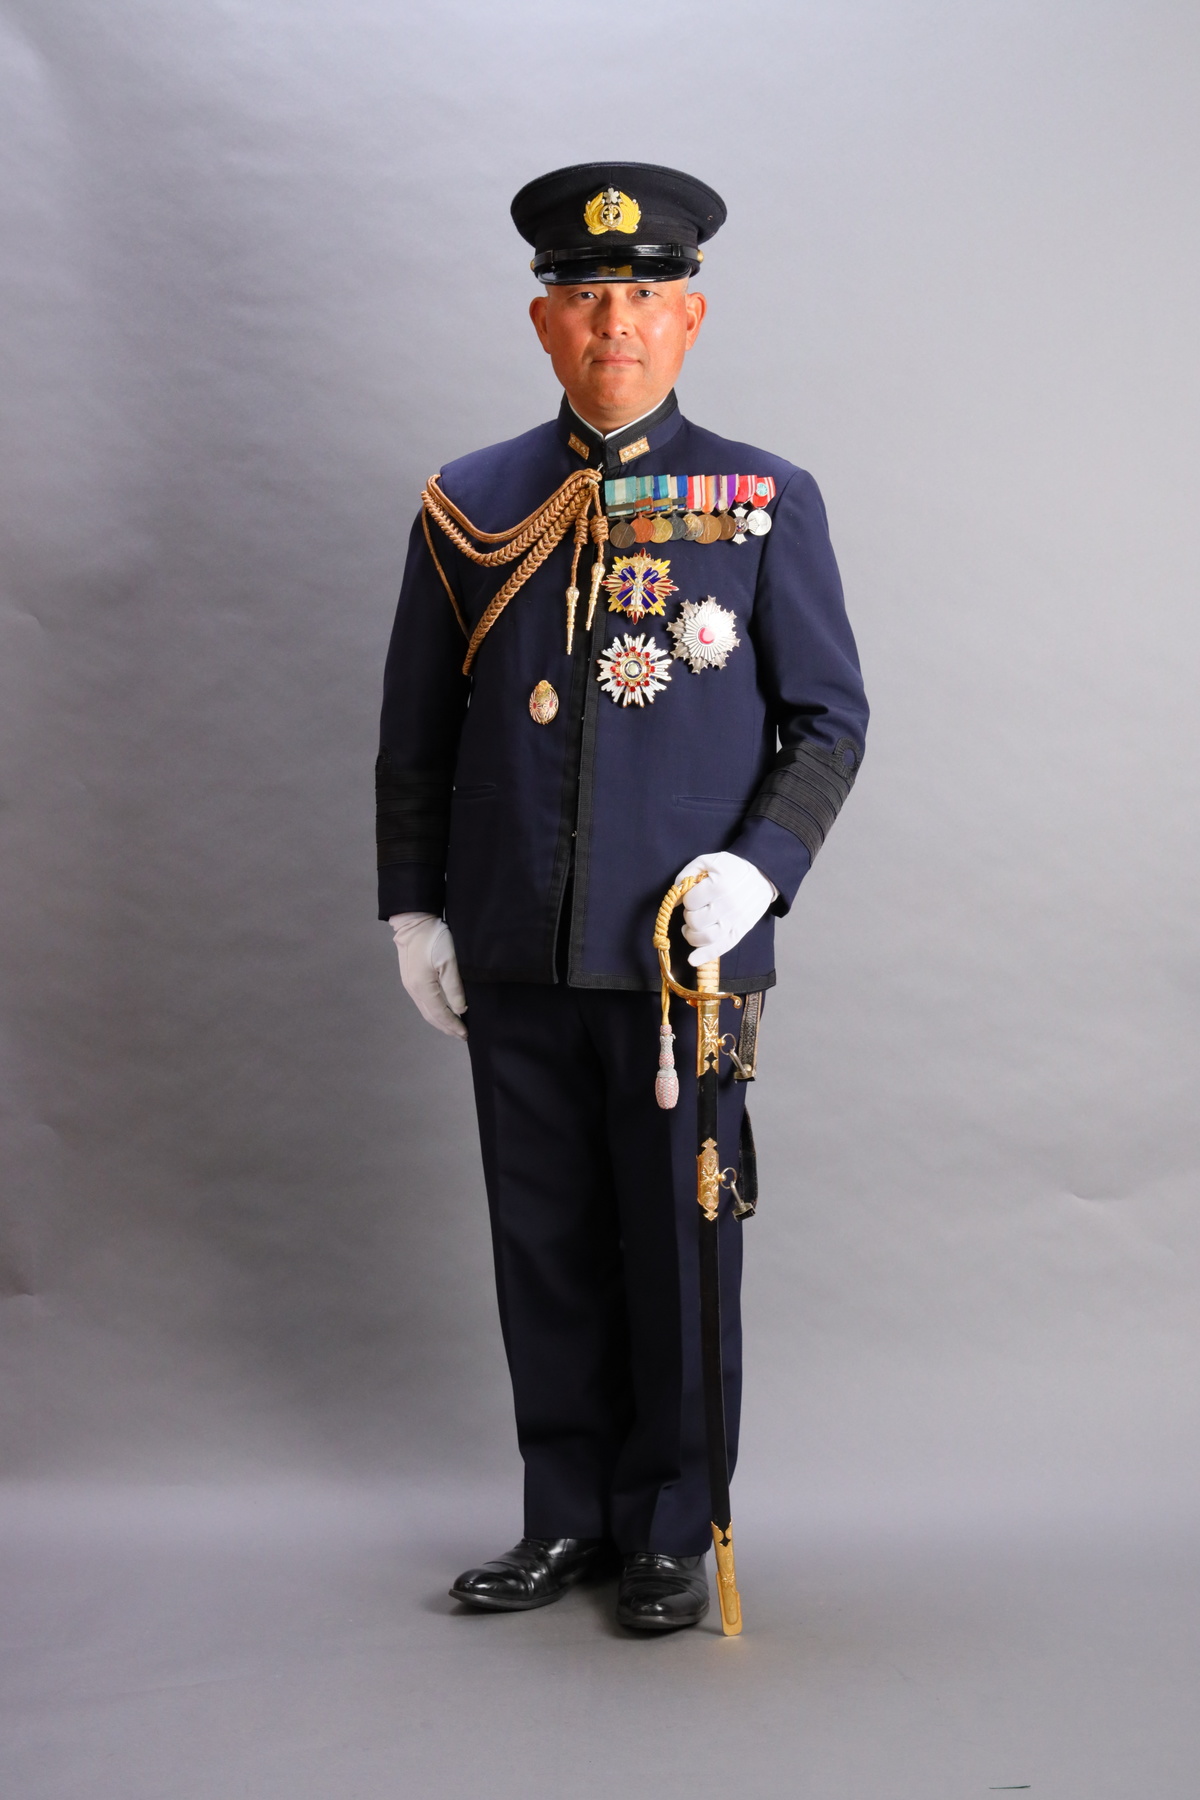 帝国海軍 機関科 特務大尉 通常礼装 礼服 肩章 胴着袴 帽子付き - 個人装備